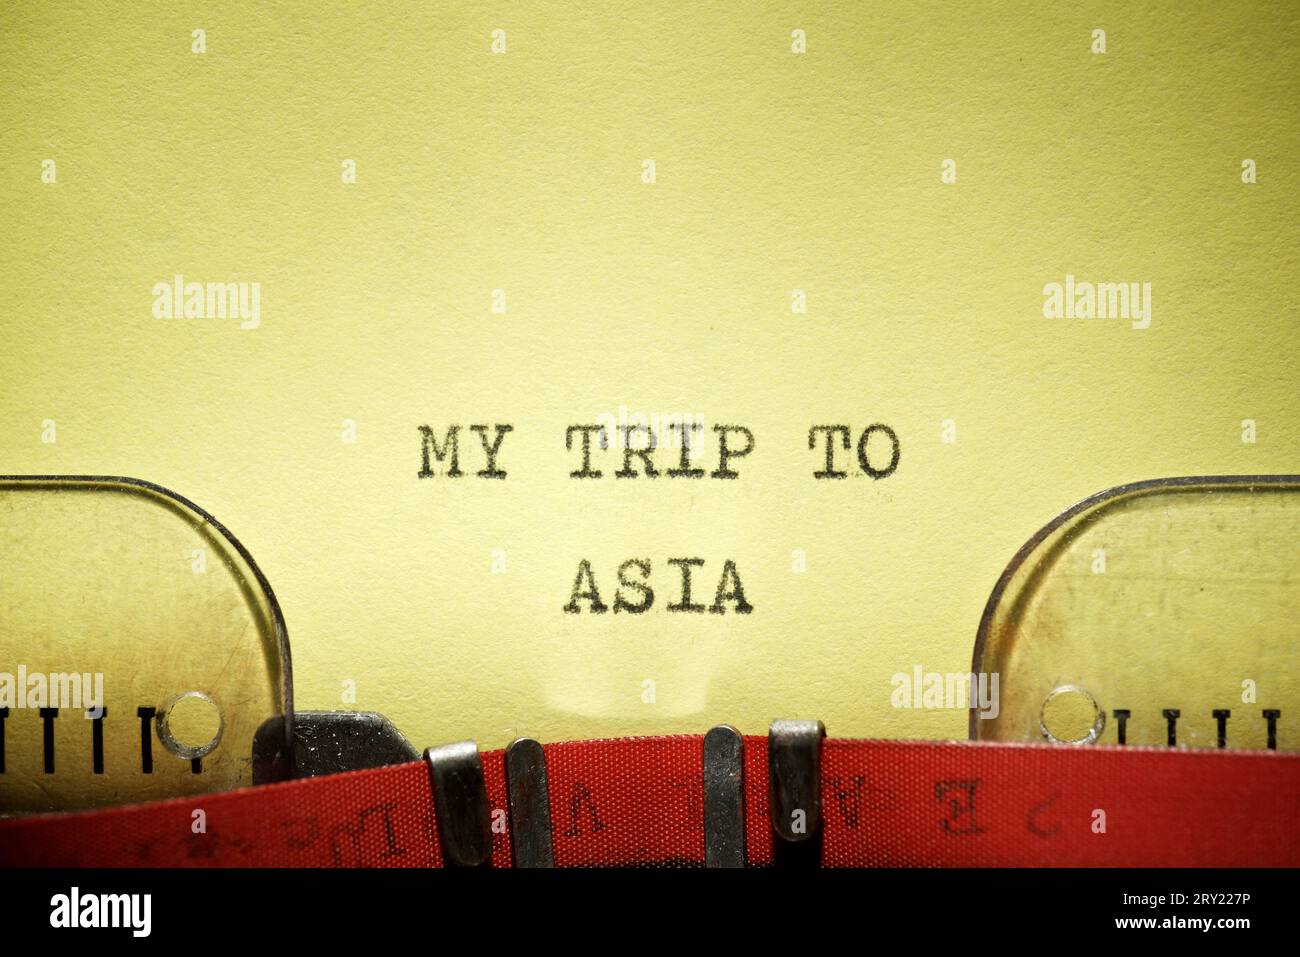 Mon voyage en Asie texte écrit avec une machine à écrire. Banque D'Images